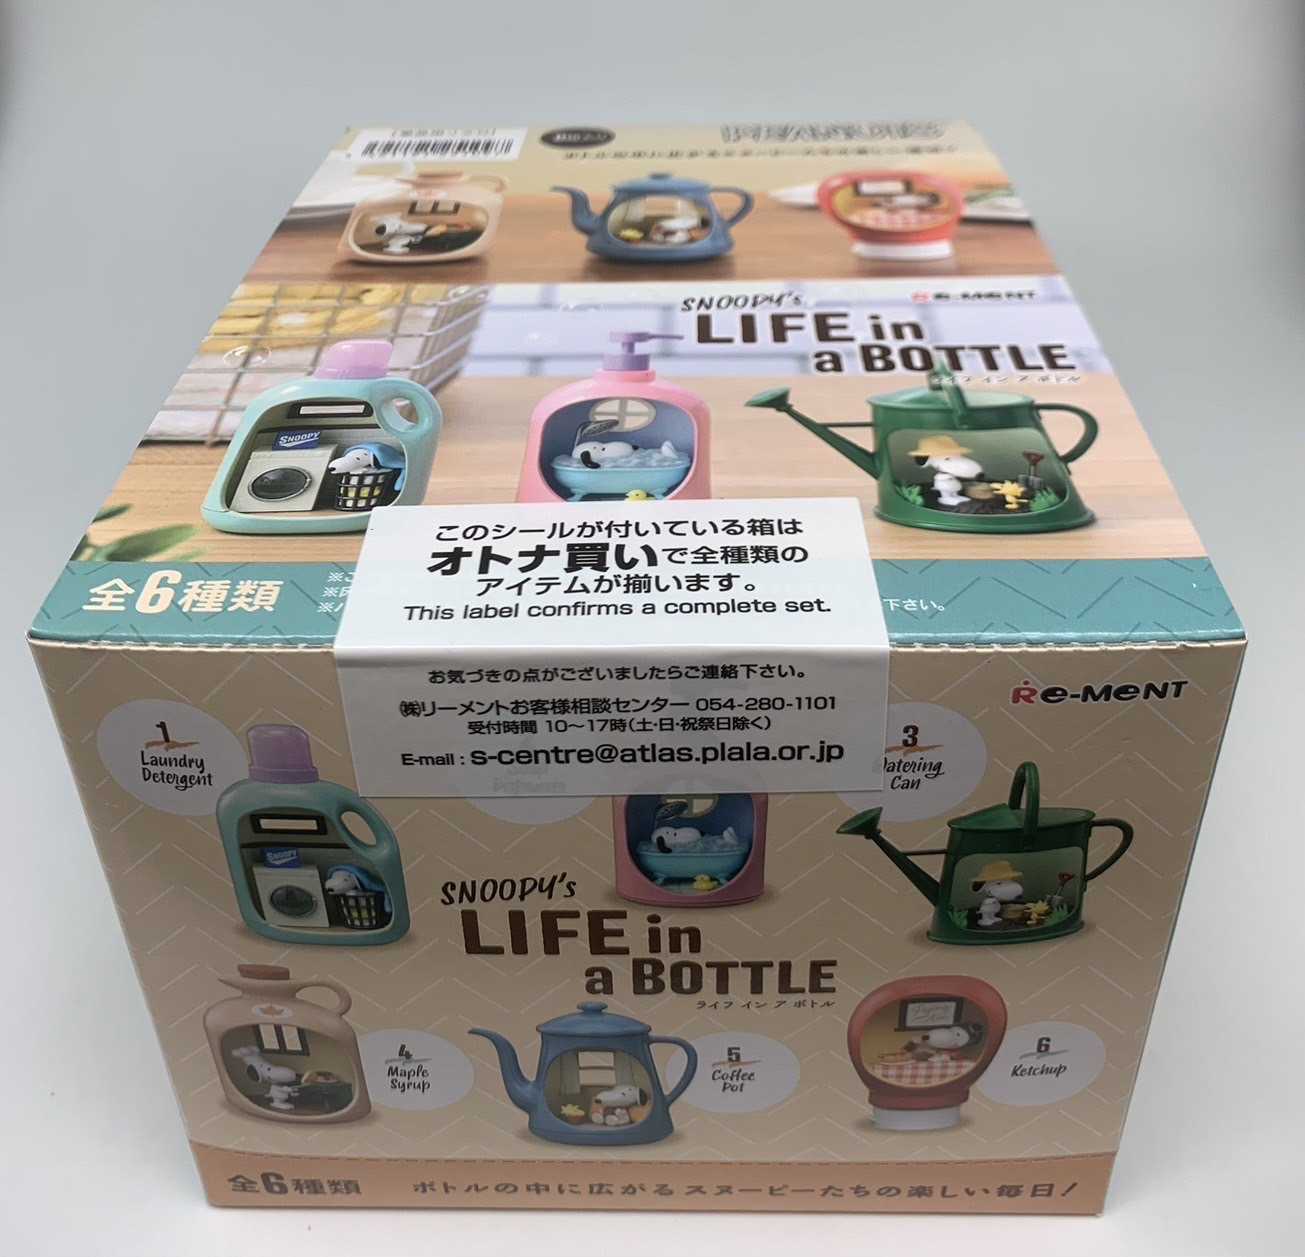 兩津[現貨] Re-MeNT SNOOPY 系列盒玩 在各種瓶子裡的生活 史努比 盲盒 盒抽 盒玩 史努比生活瓶